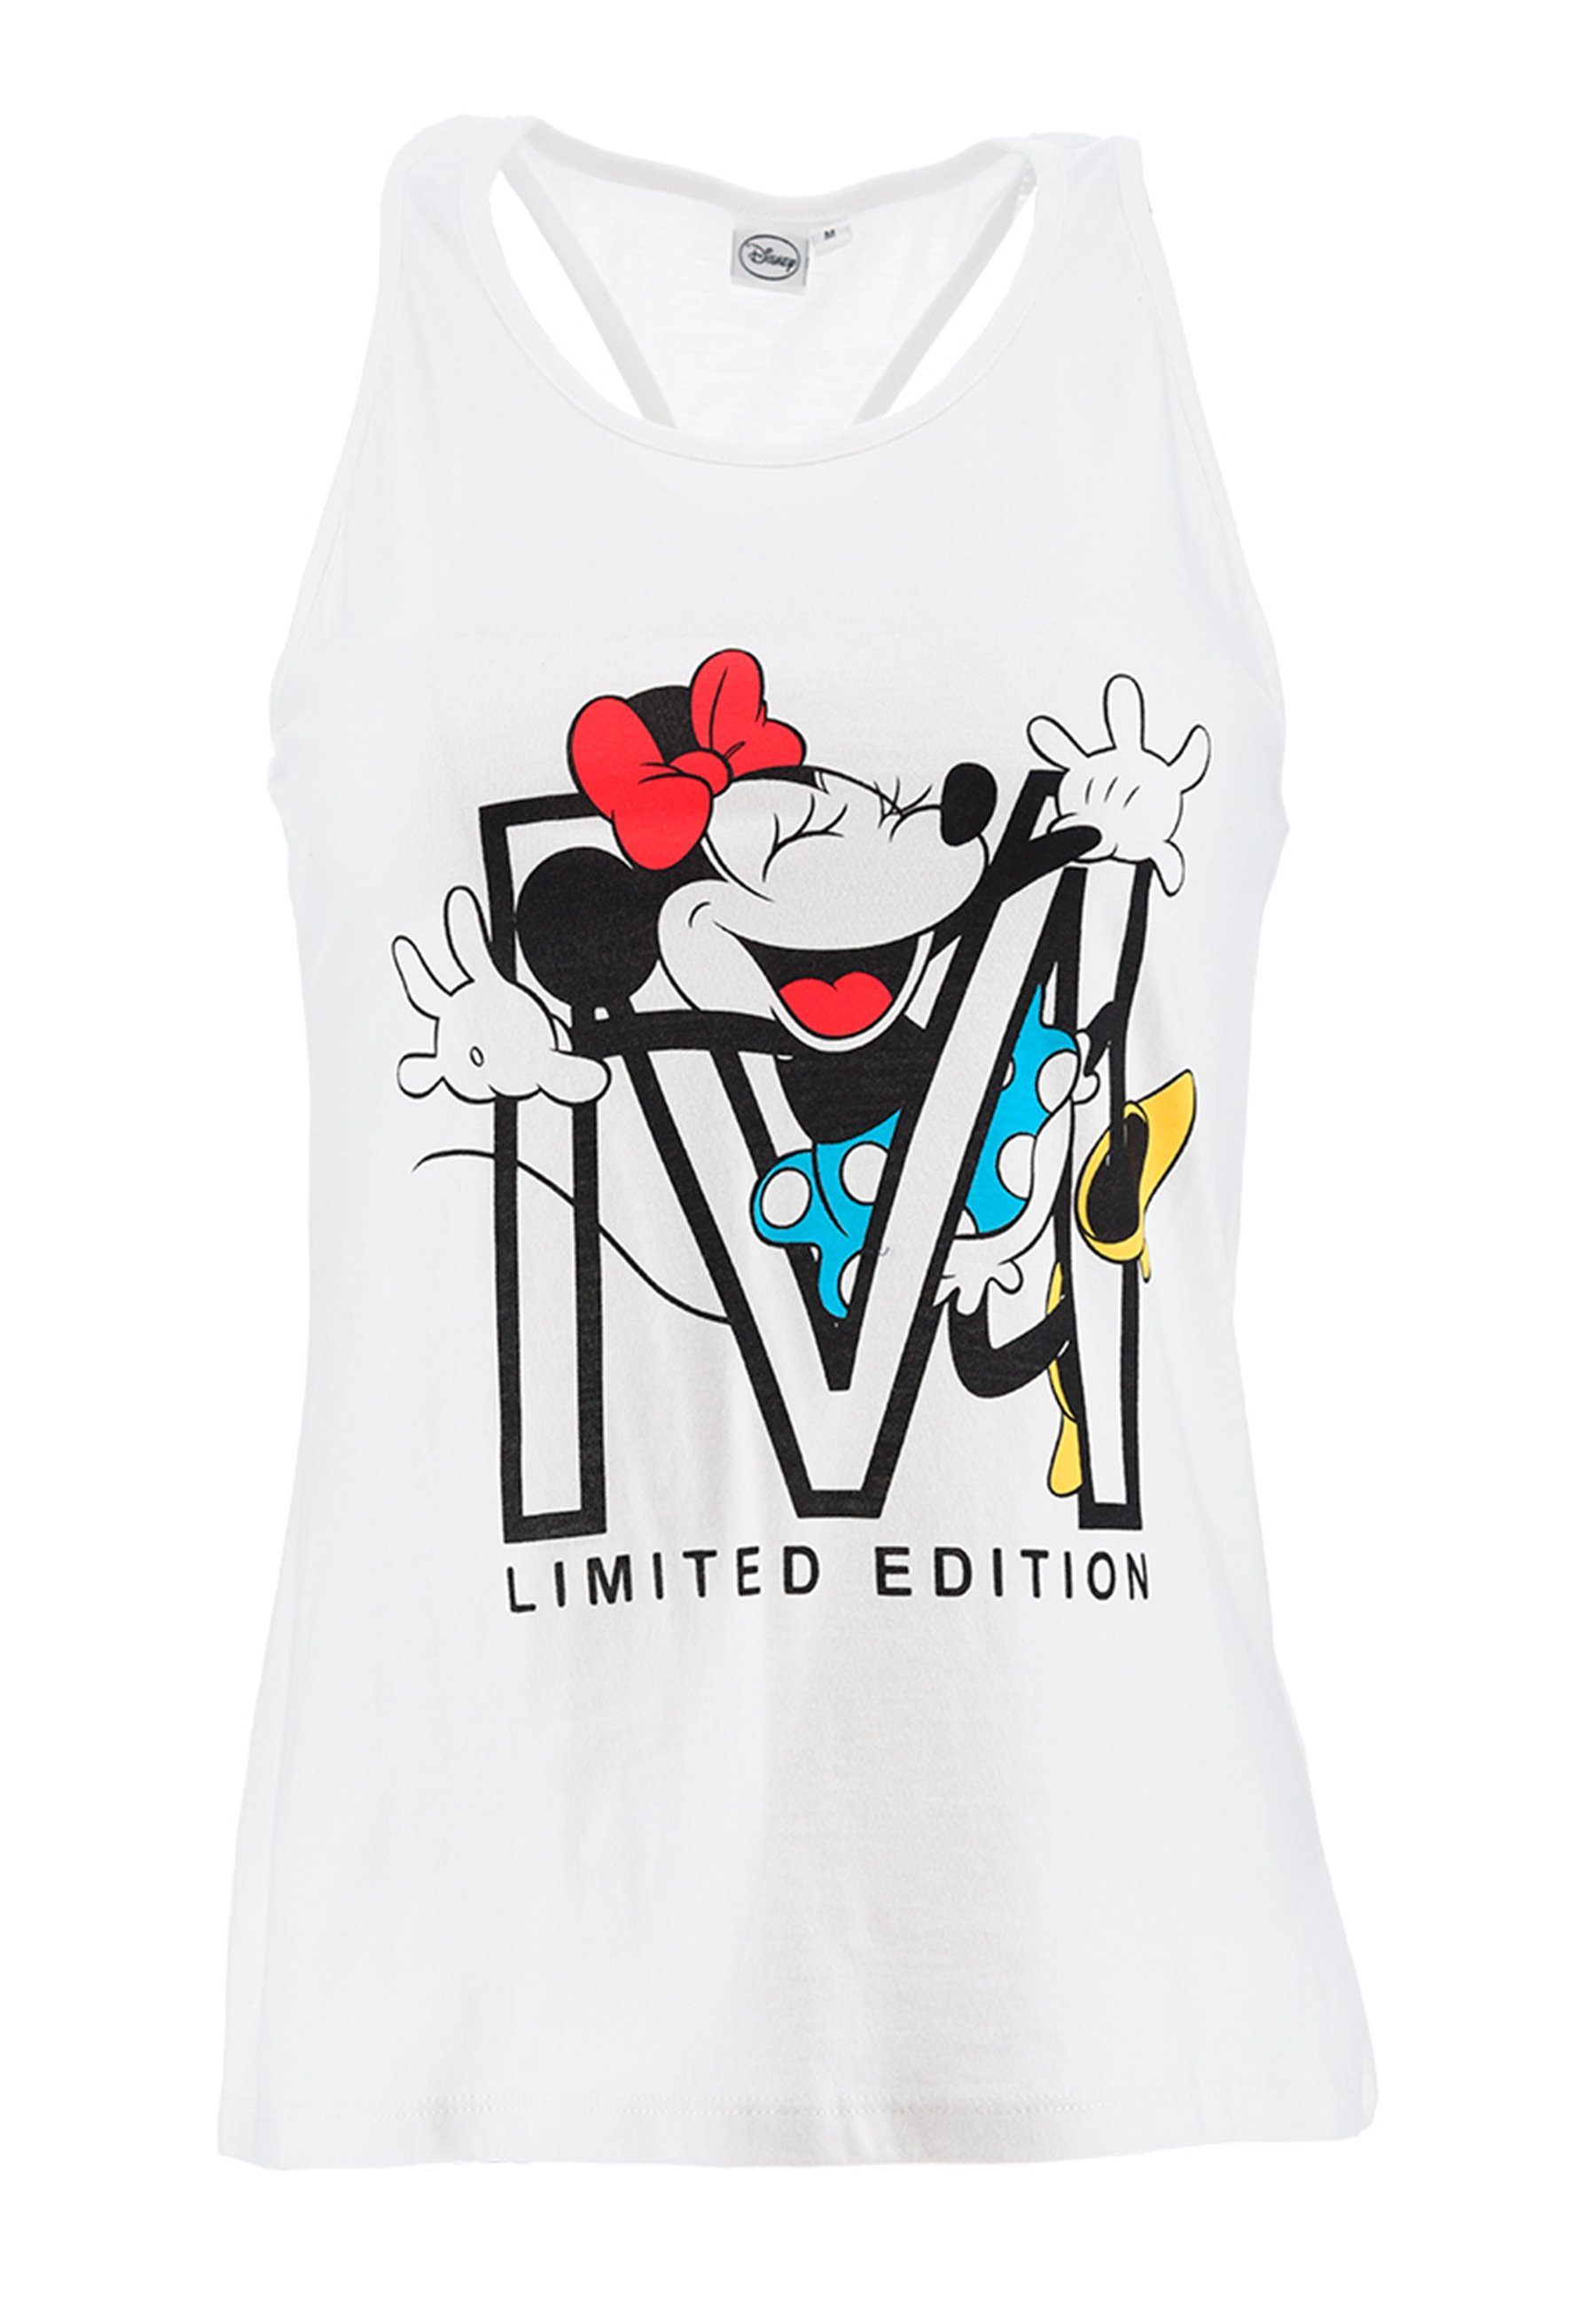 Disney Minnie Mouse Muskelshirt Mini Maus Damen Top Shirt ärmellos Weiß